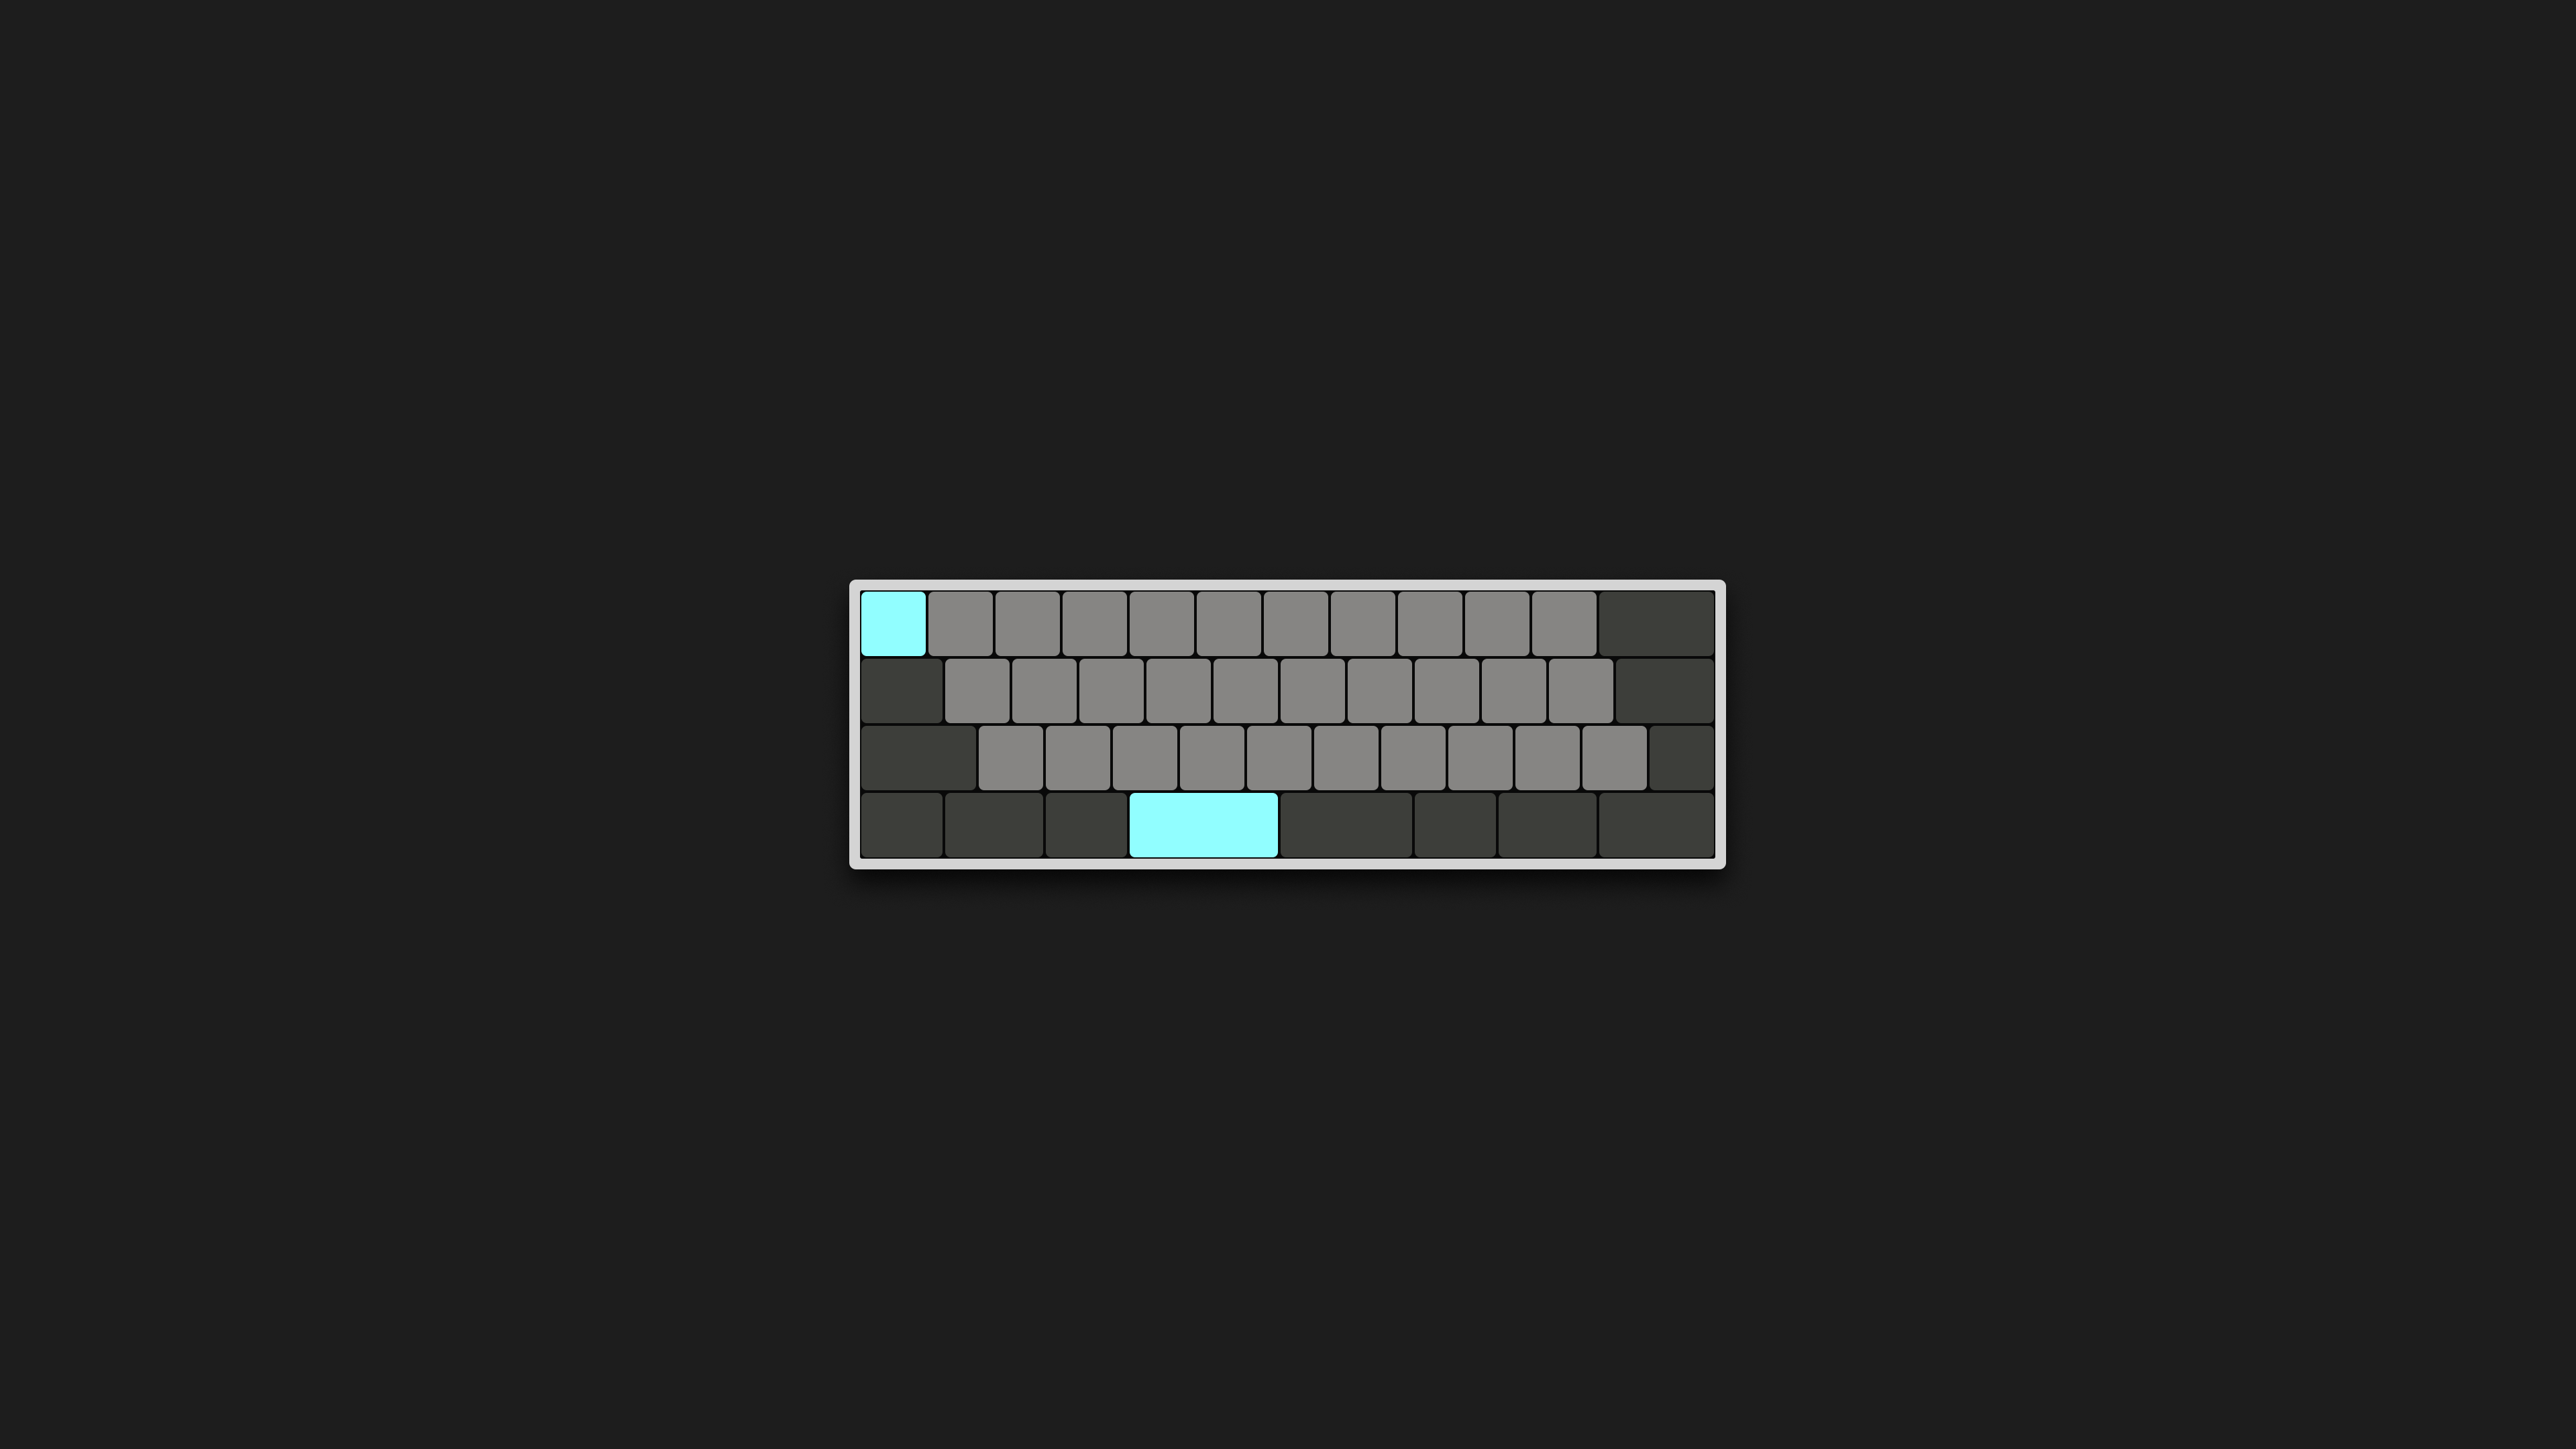 Minimal keyboard wallpaper